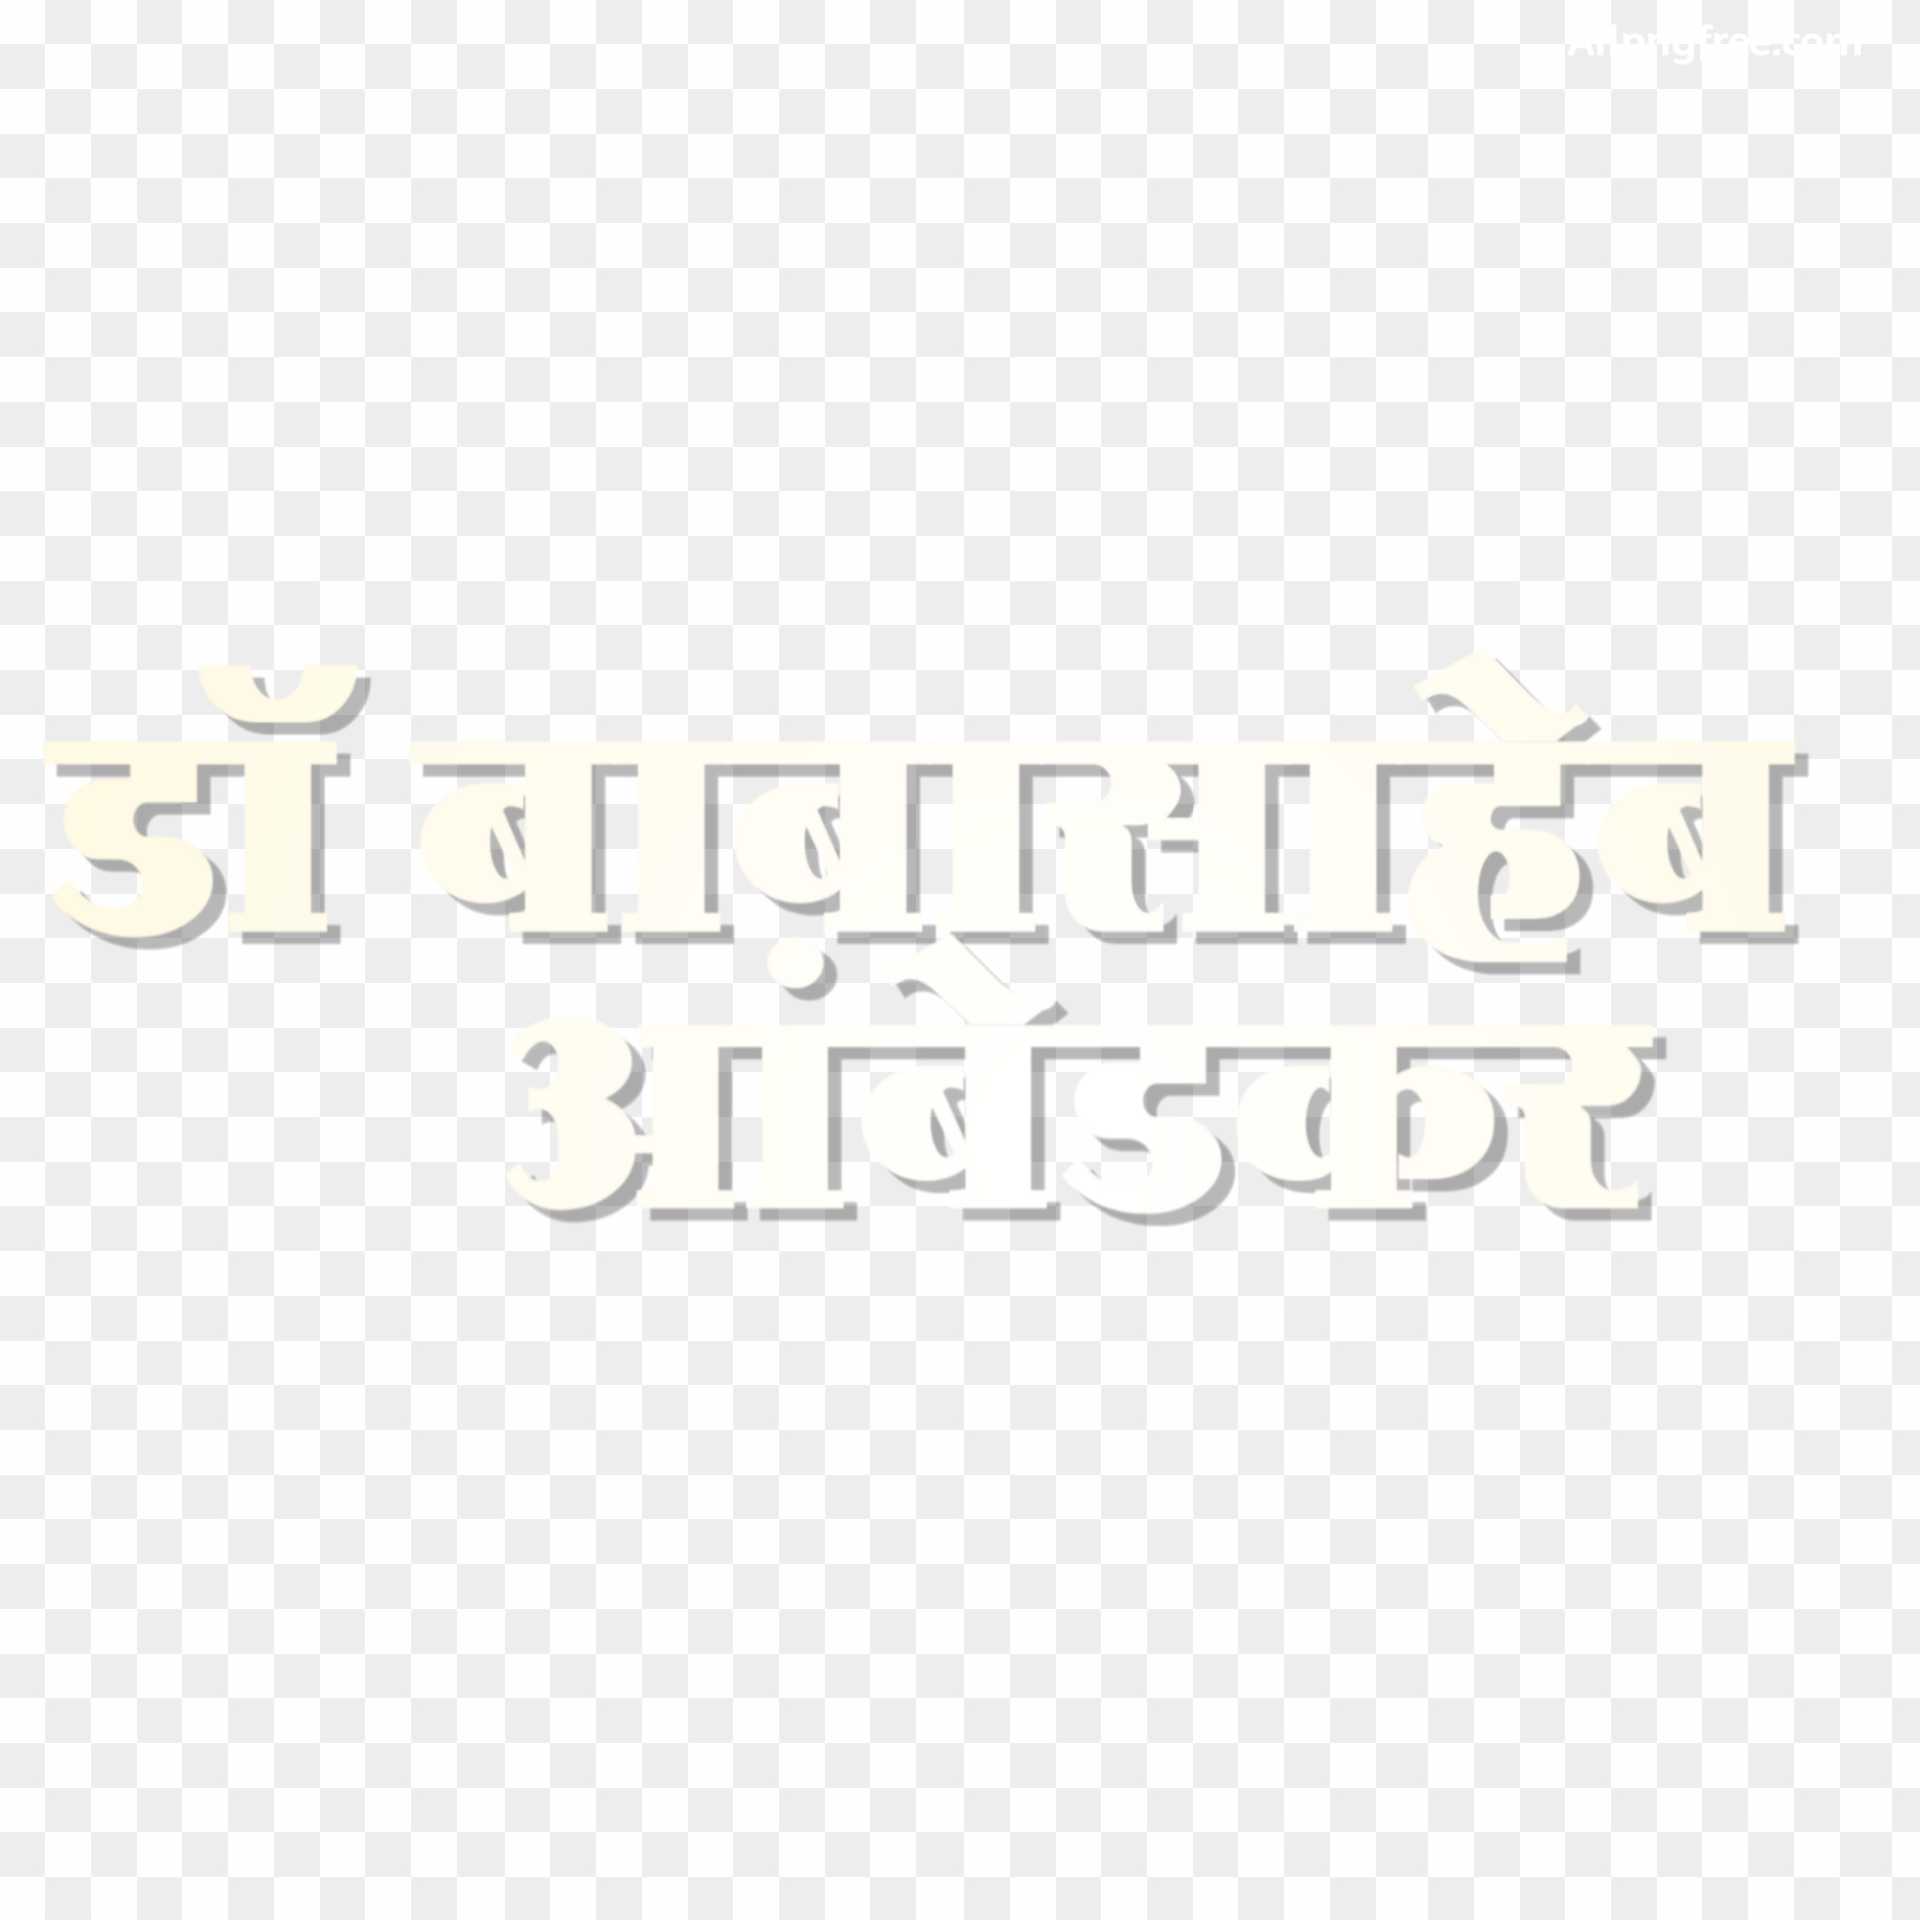 Bhim Rao Ambedkar text PNG images 